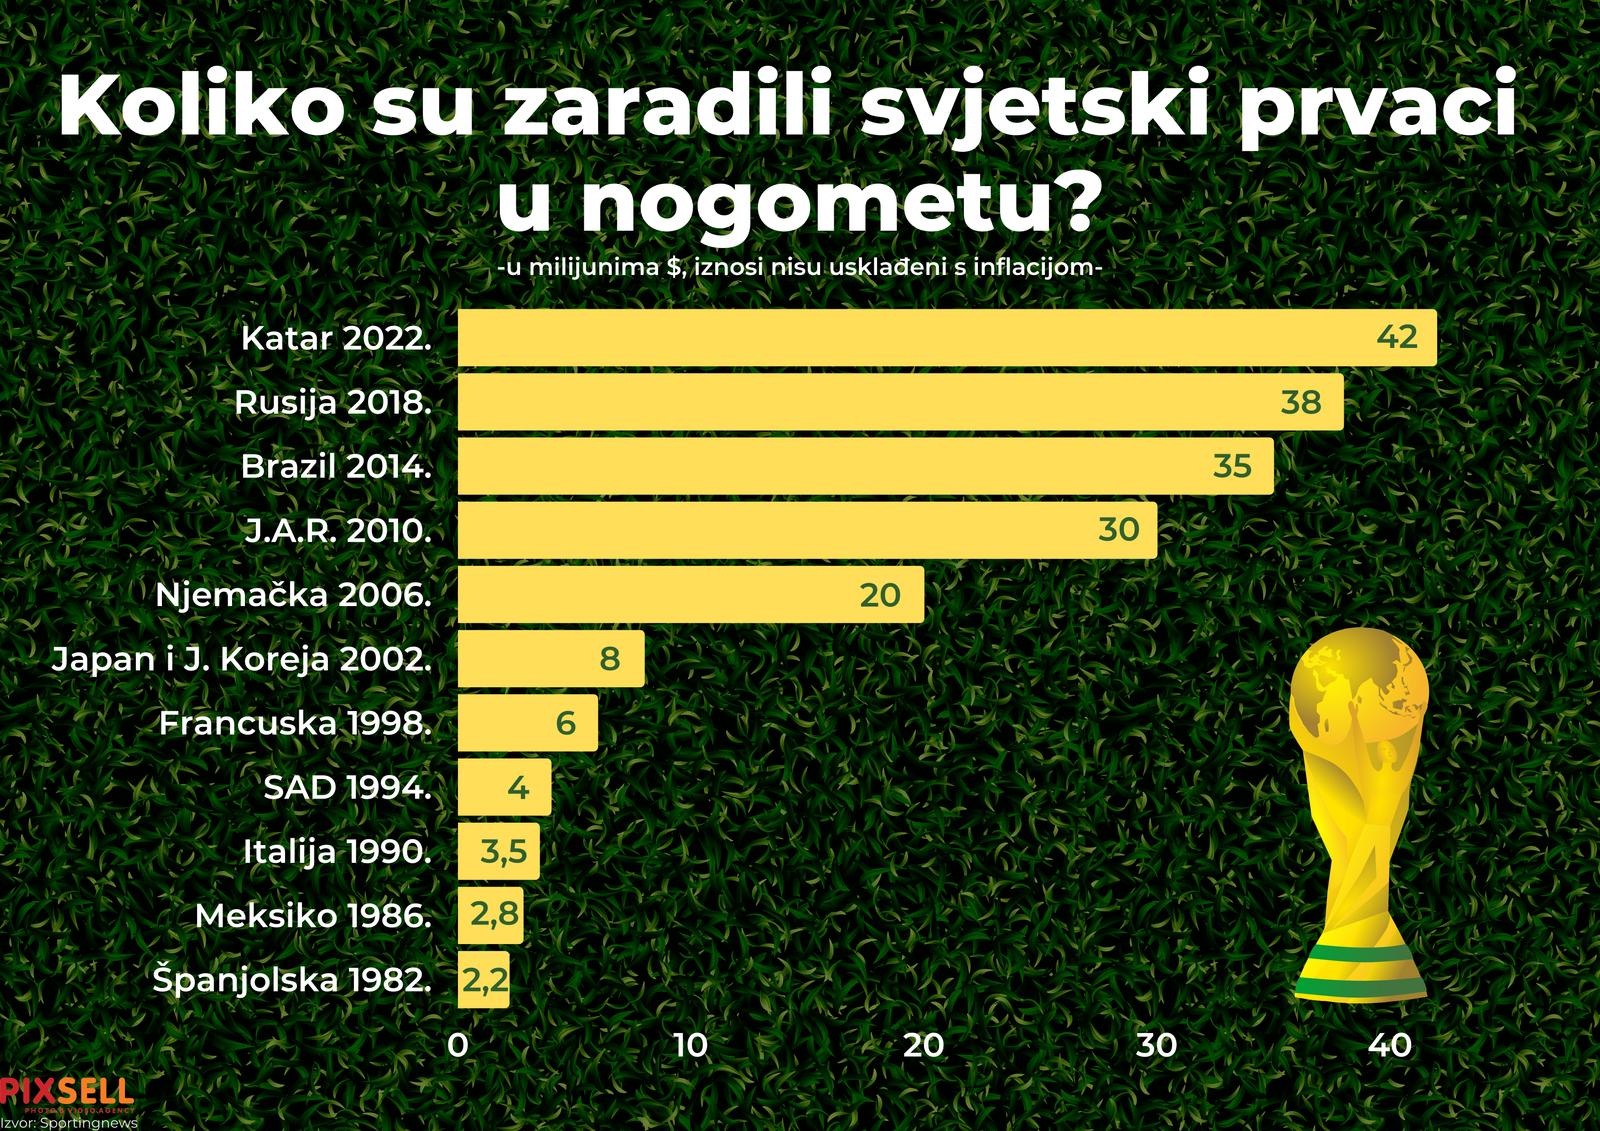  Infografika prikazuje koliko su zaradili svjetski prvaci u nogometu